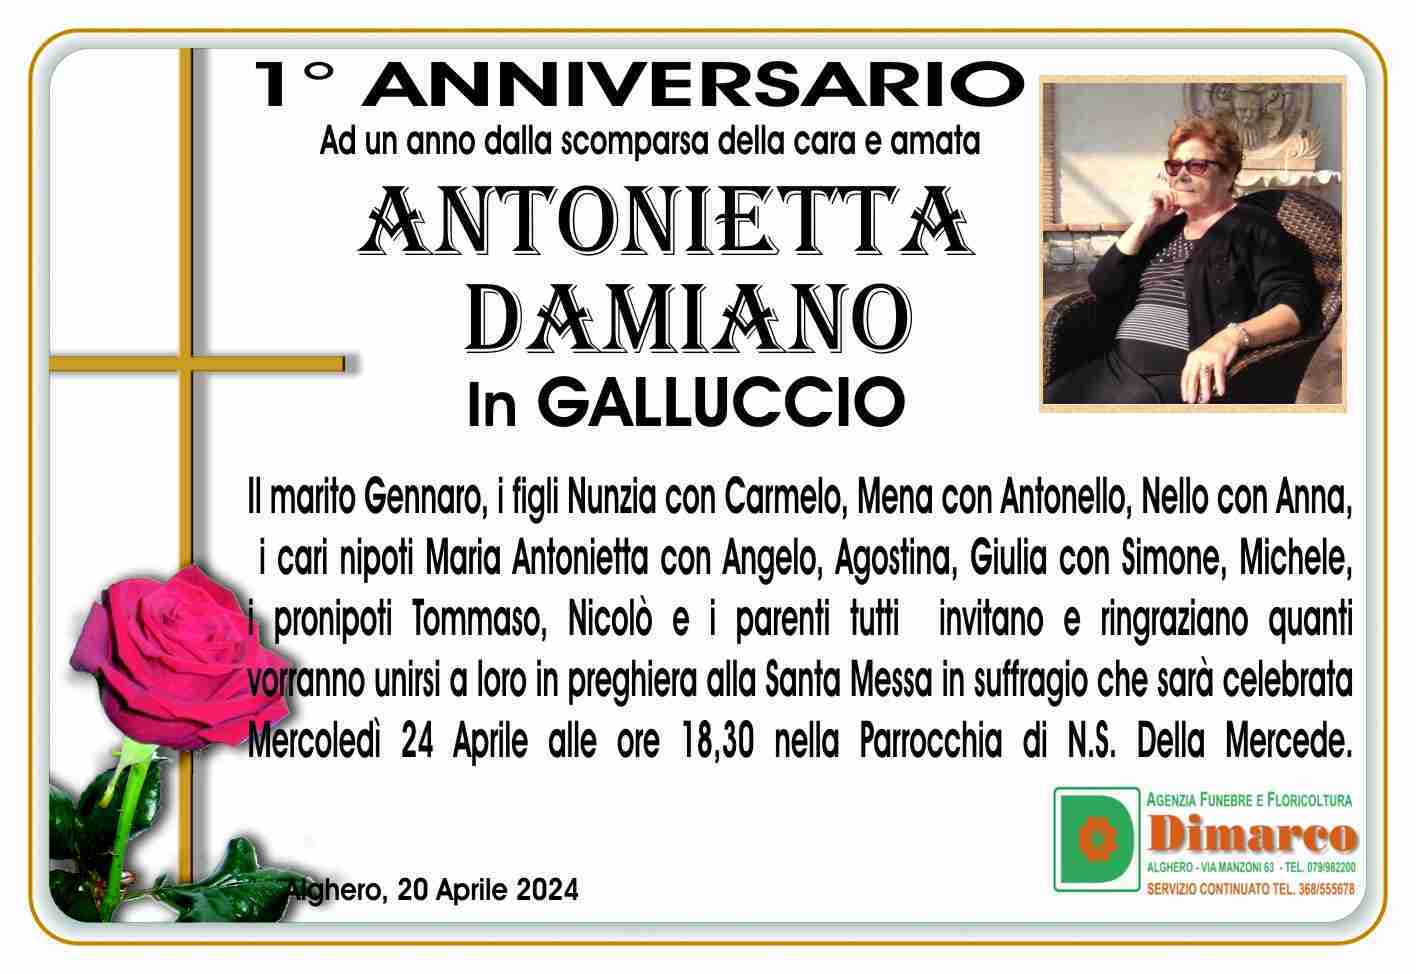 Antonietta Damiano